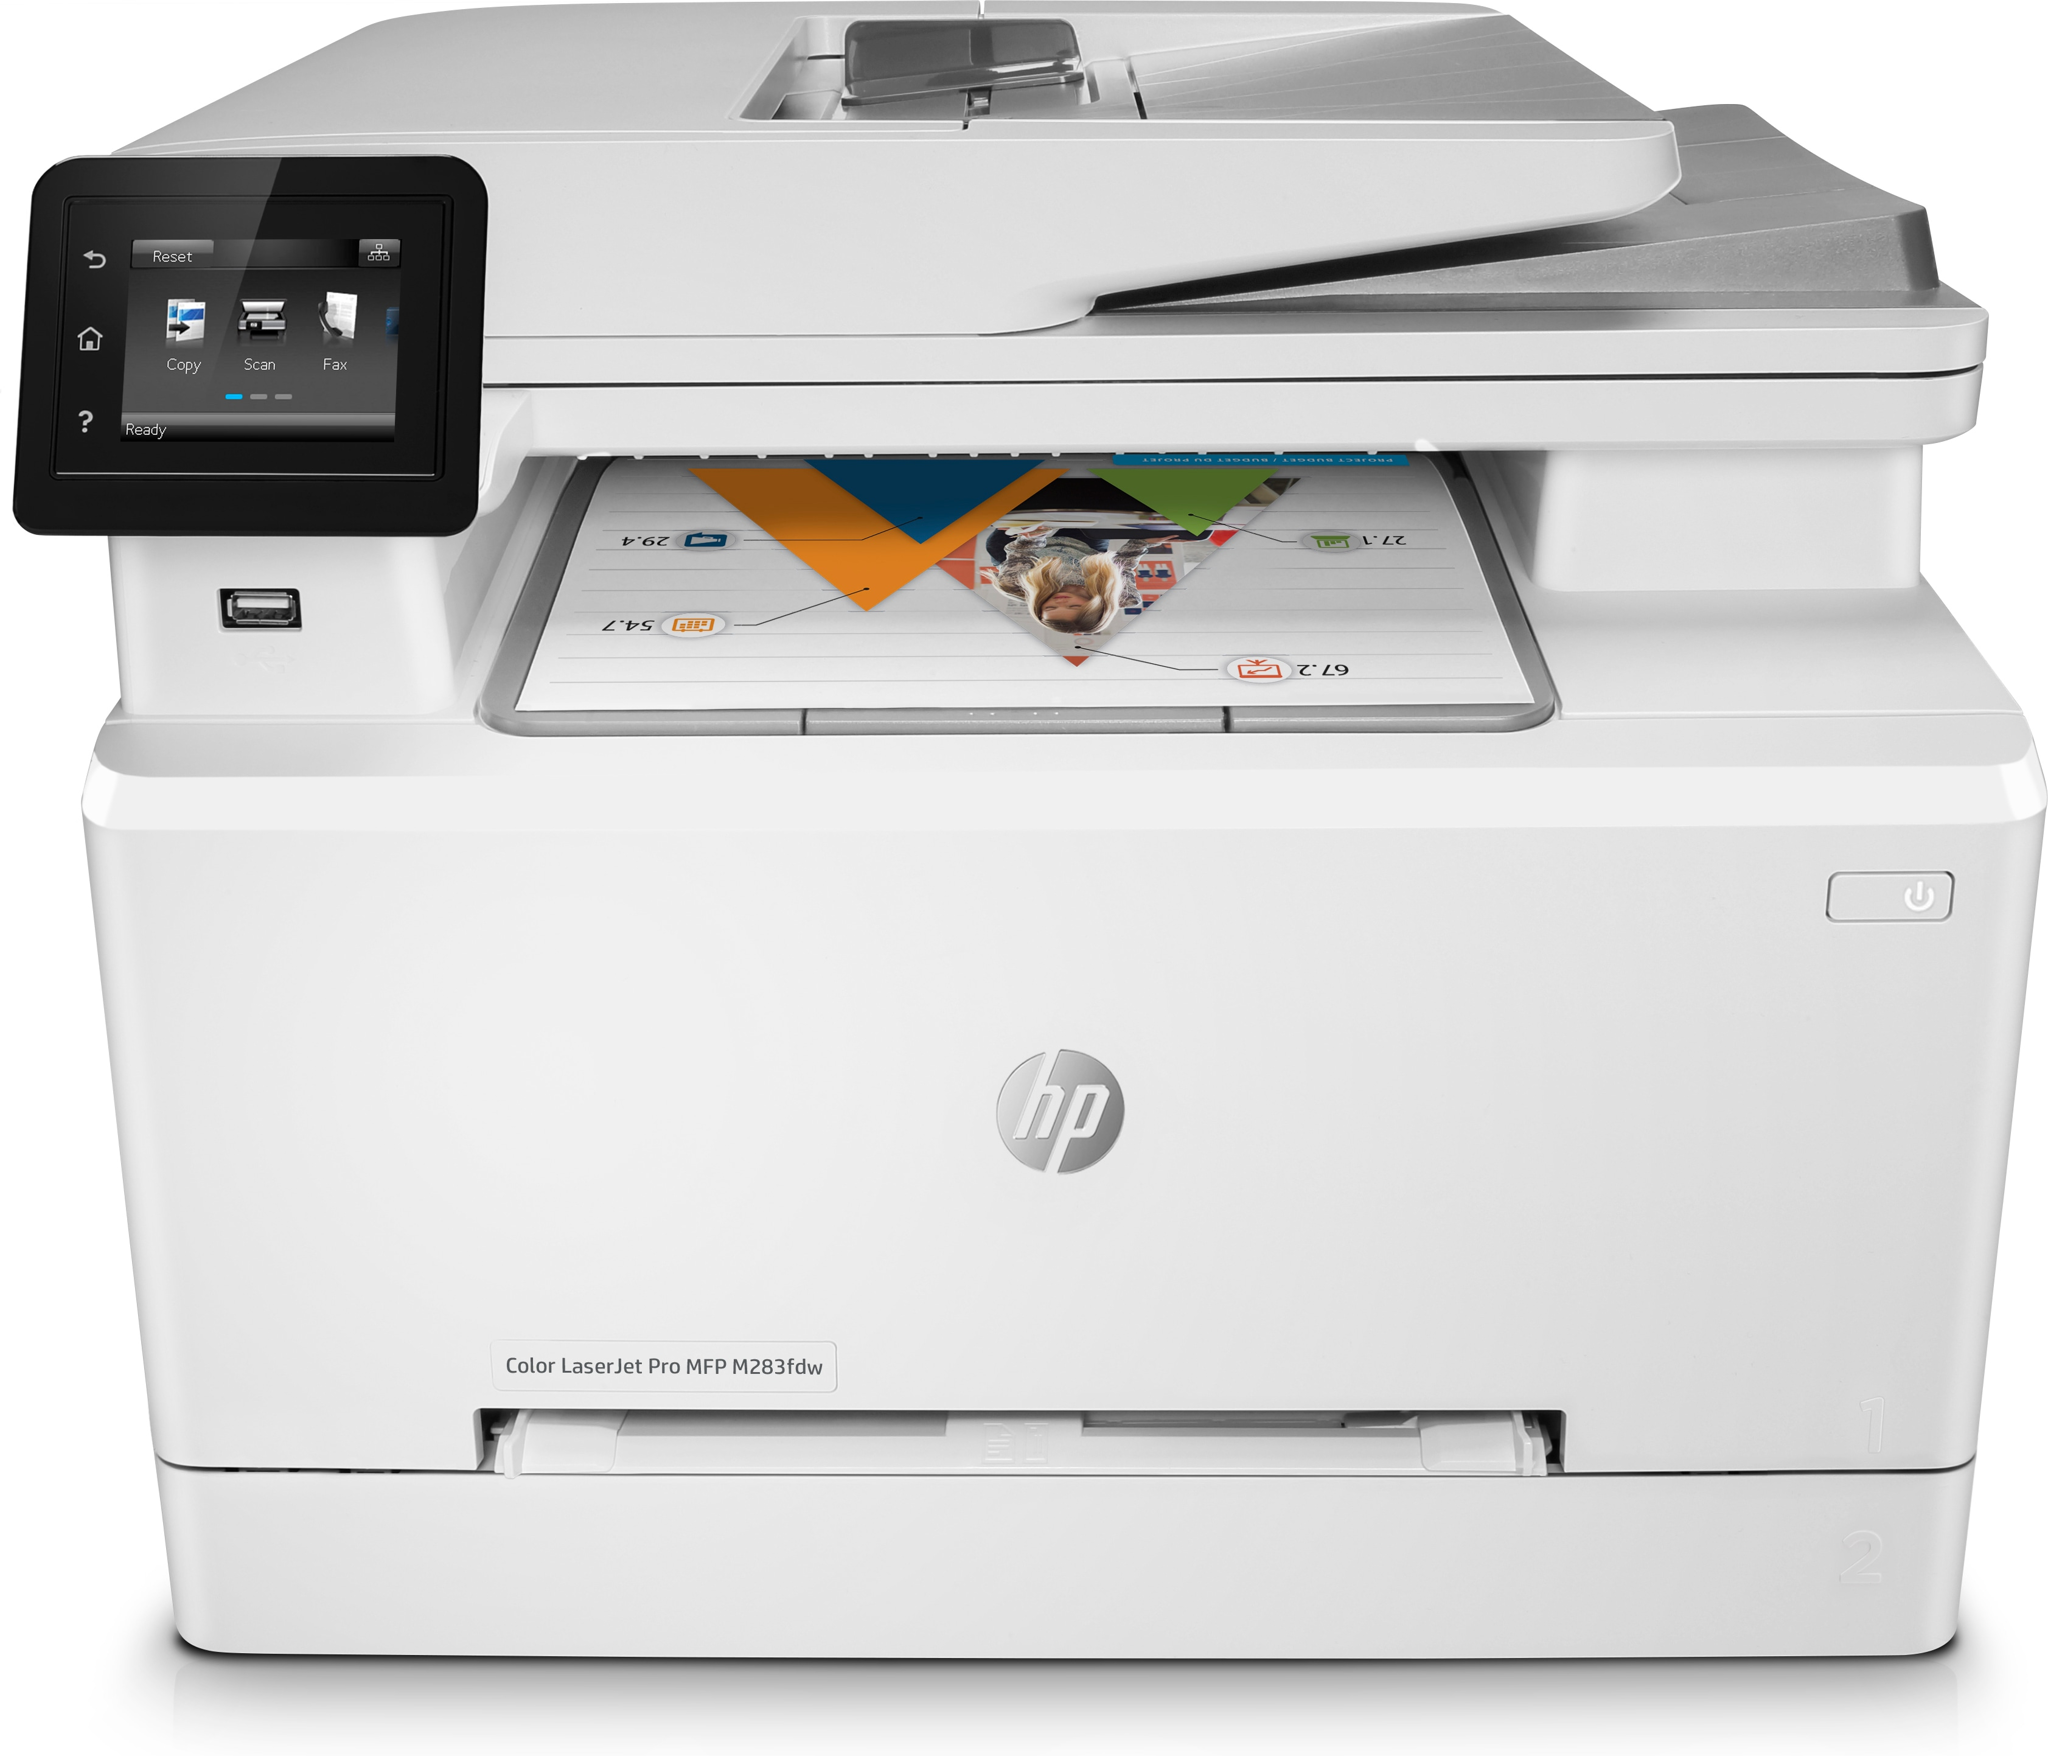 Bild von HP Color LaserJet Pro MFP M283fdw - Drucken - Kopieren - Scannen - Faxen - Drucken über den USB-Anschluss vorn; Scannen an E-Mail; Beidseitiger Druck; Automatische - geglättete Dokumentenzuführung (50 Blatt) - Laser - Farbdruck - 600 x 600 DPI - A4 - Direktd